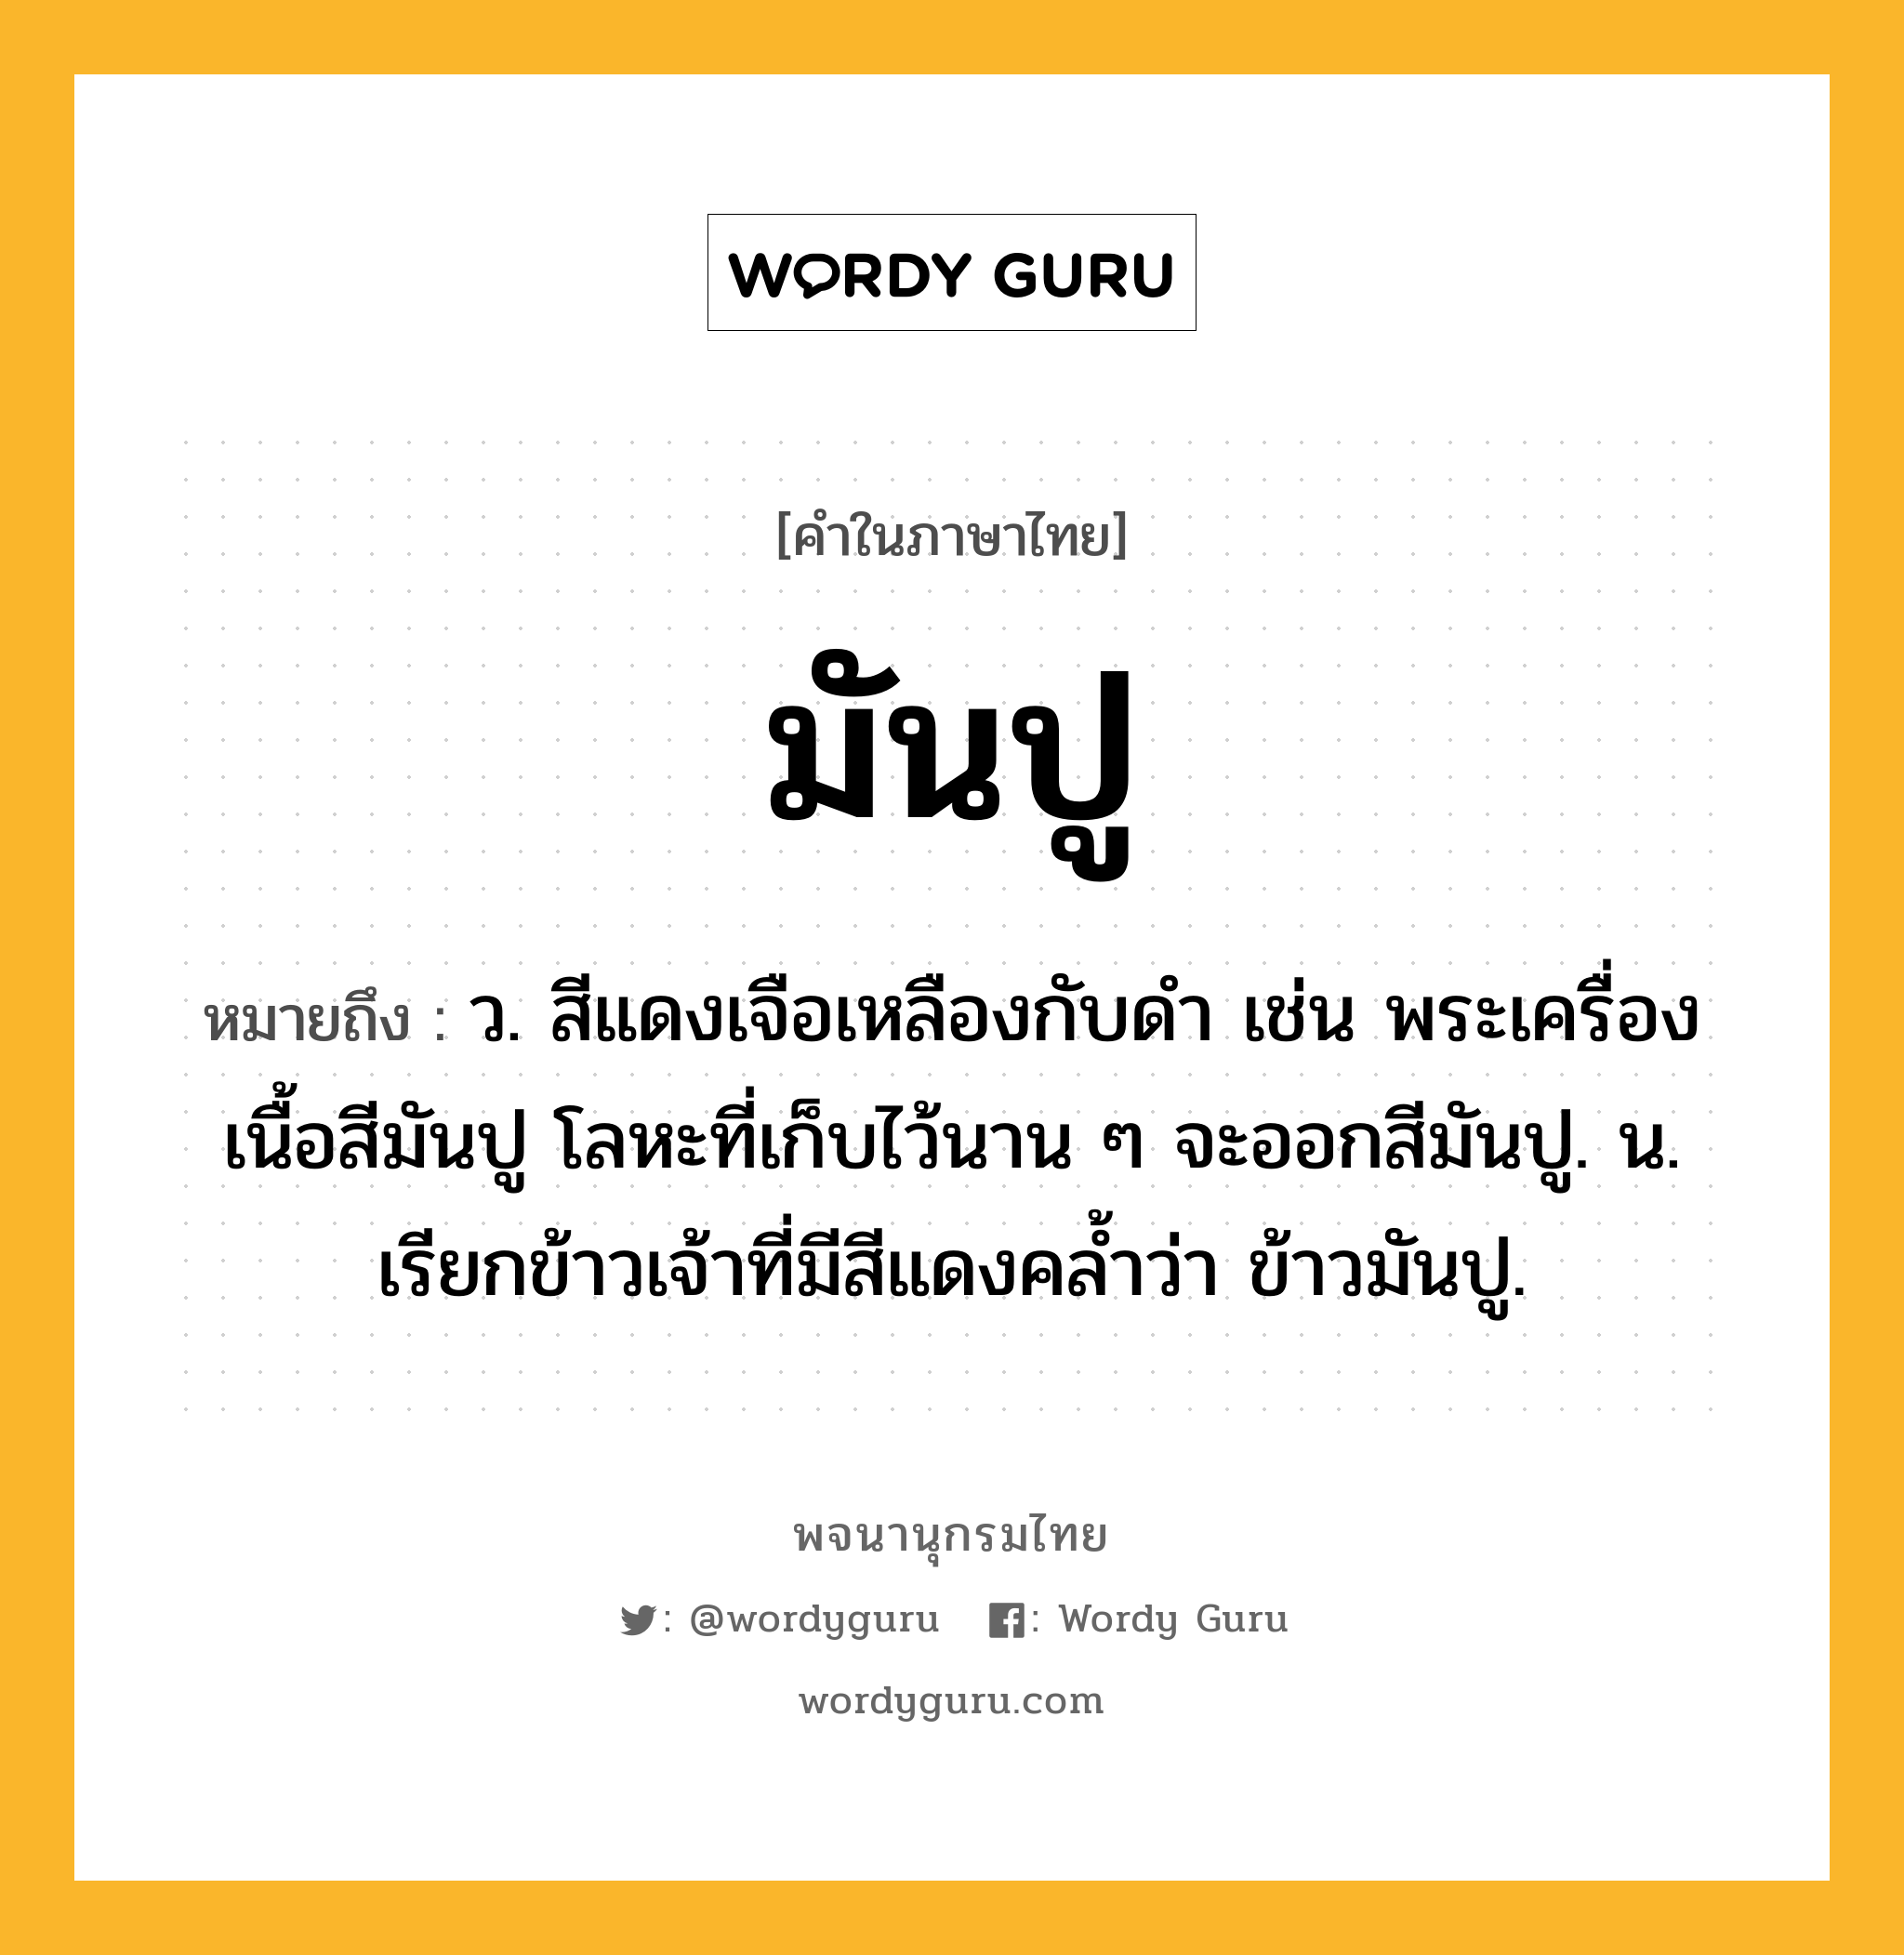 มันปู หมายถึงอะไร?, คำในภาษาไทย มันปู หมายถึง ว. สีแดงเจือเหลืองกับดํา เช่น พระเครื่องเนื้อสีมันปู โลหะที่เก็บไว้นาน ๆ จะออกสีมันปู. น. เรียกข้าวเจ้าที่มีสีแดงคลํ้าว่า ข้าวมันปู.